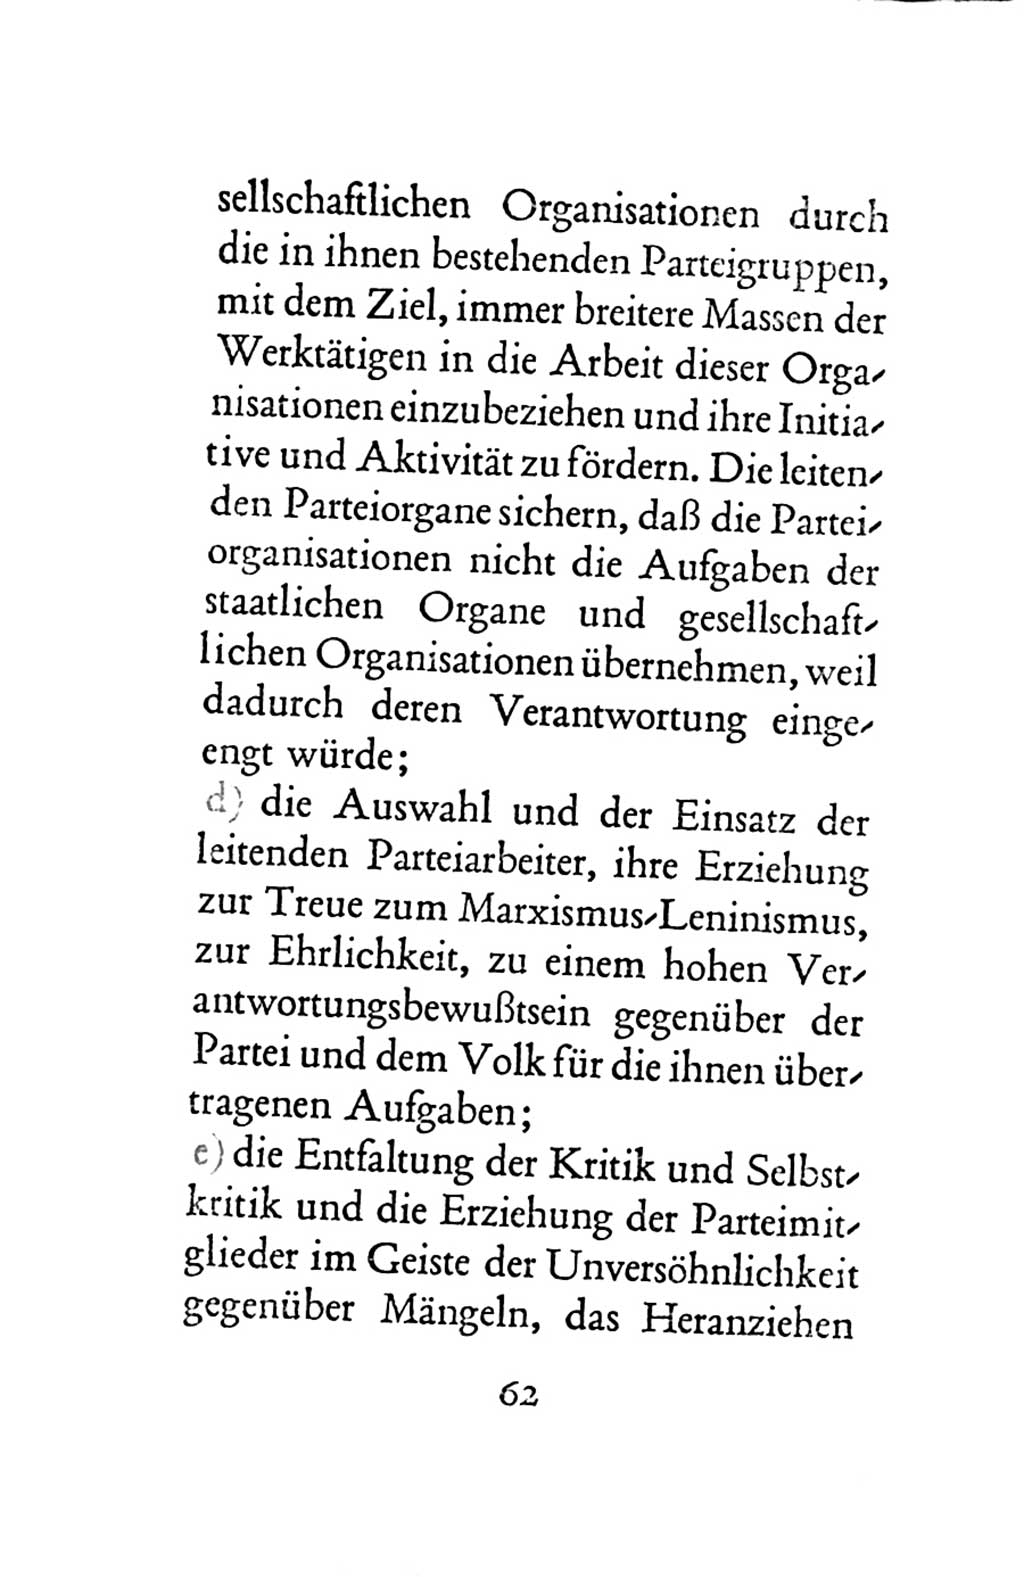 Statut der Sozialistischen Einheitspartei Deutschlands (SED) 1963, Seite 62 (St. SED DDR 1963, S. 62)